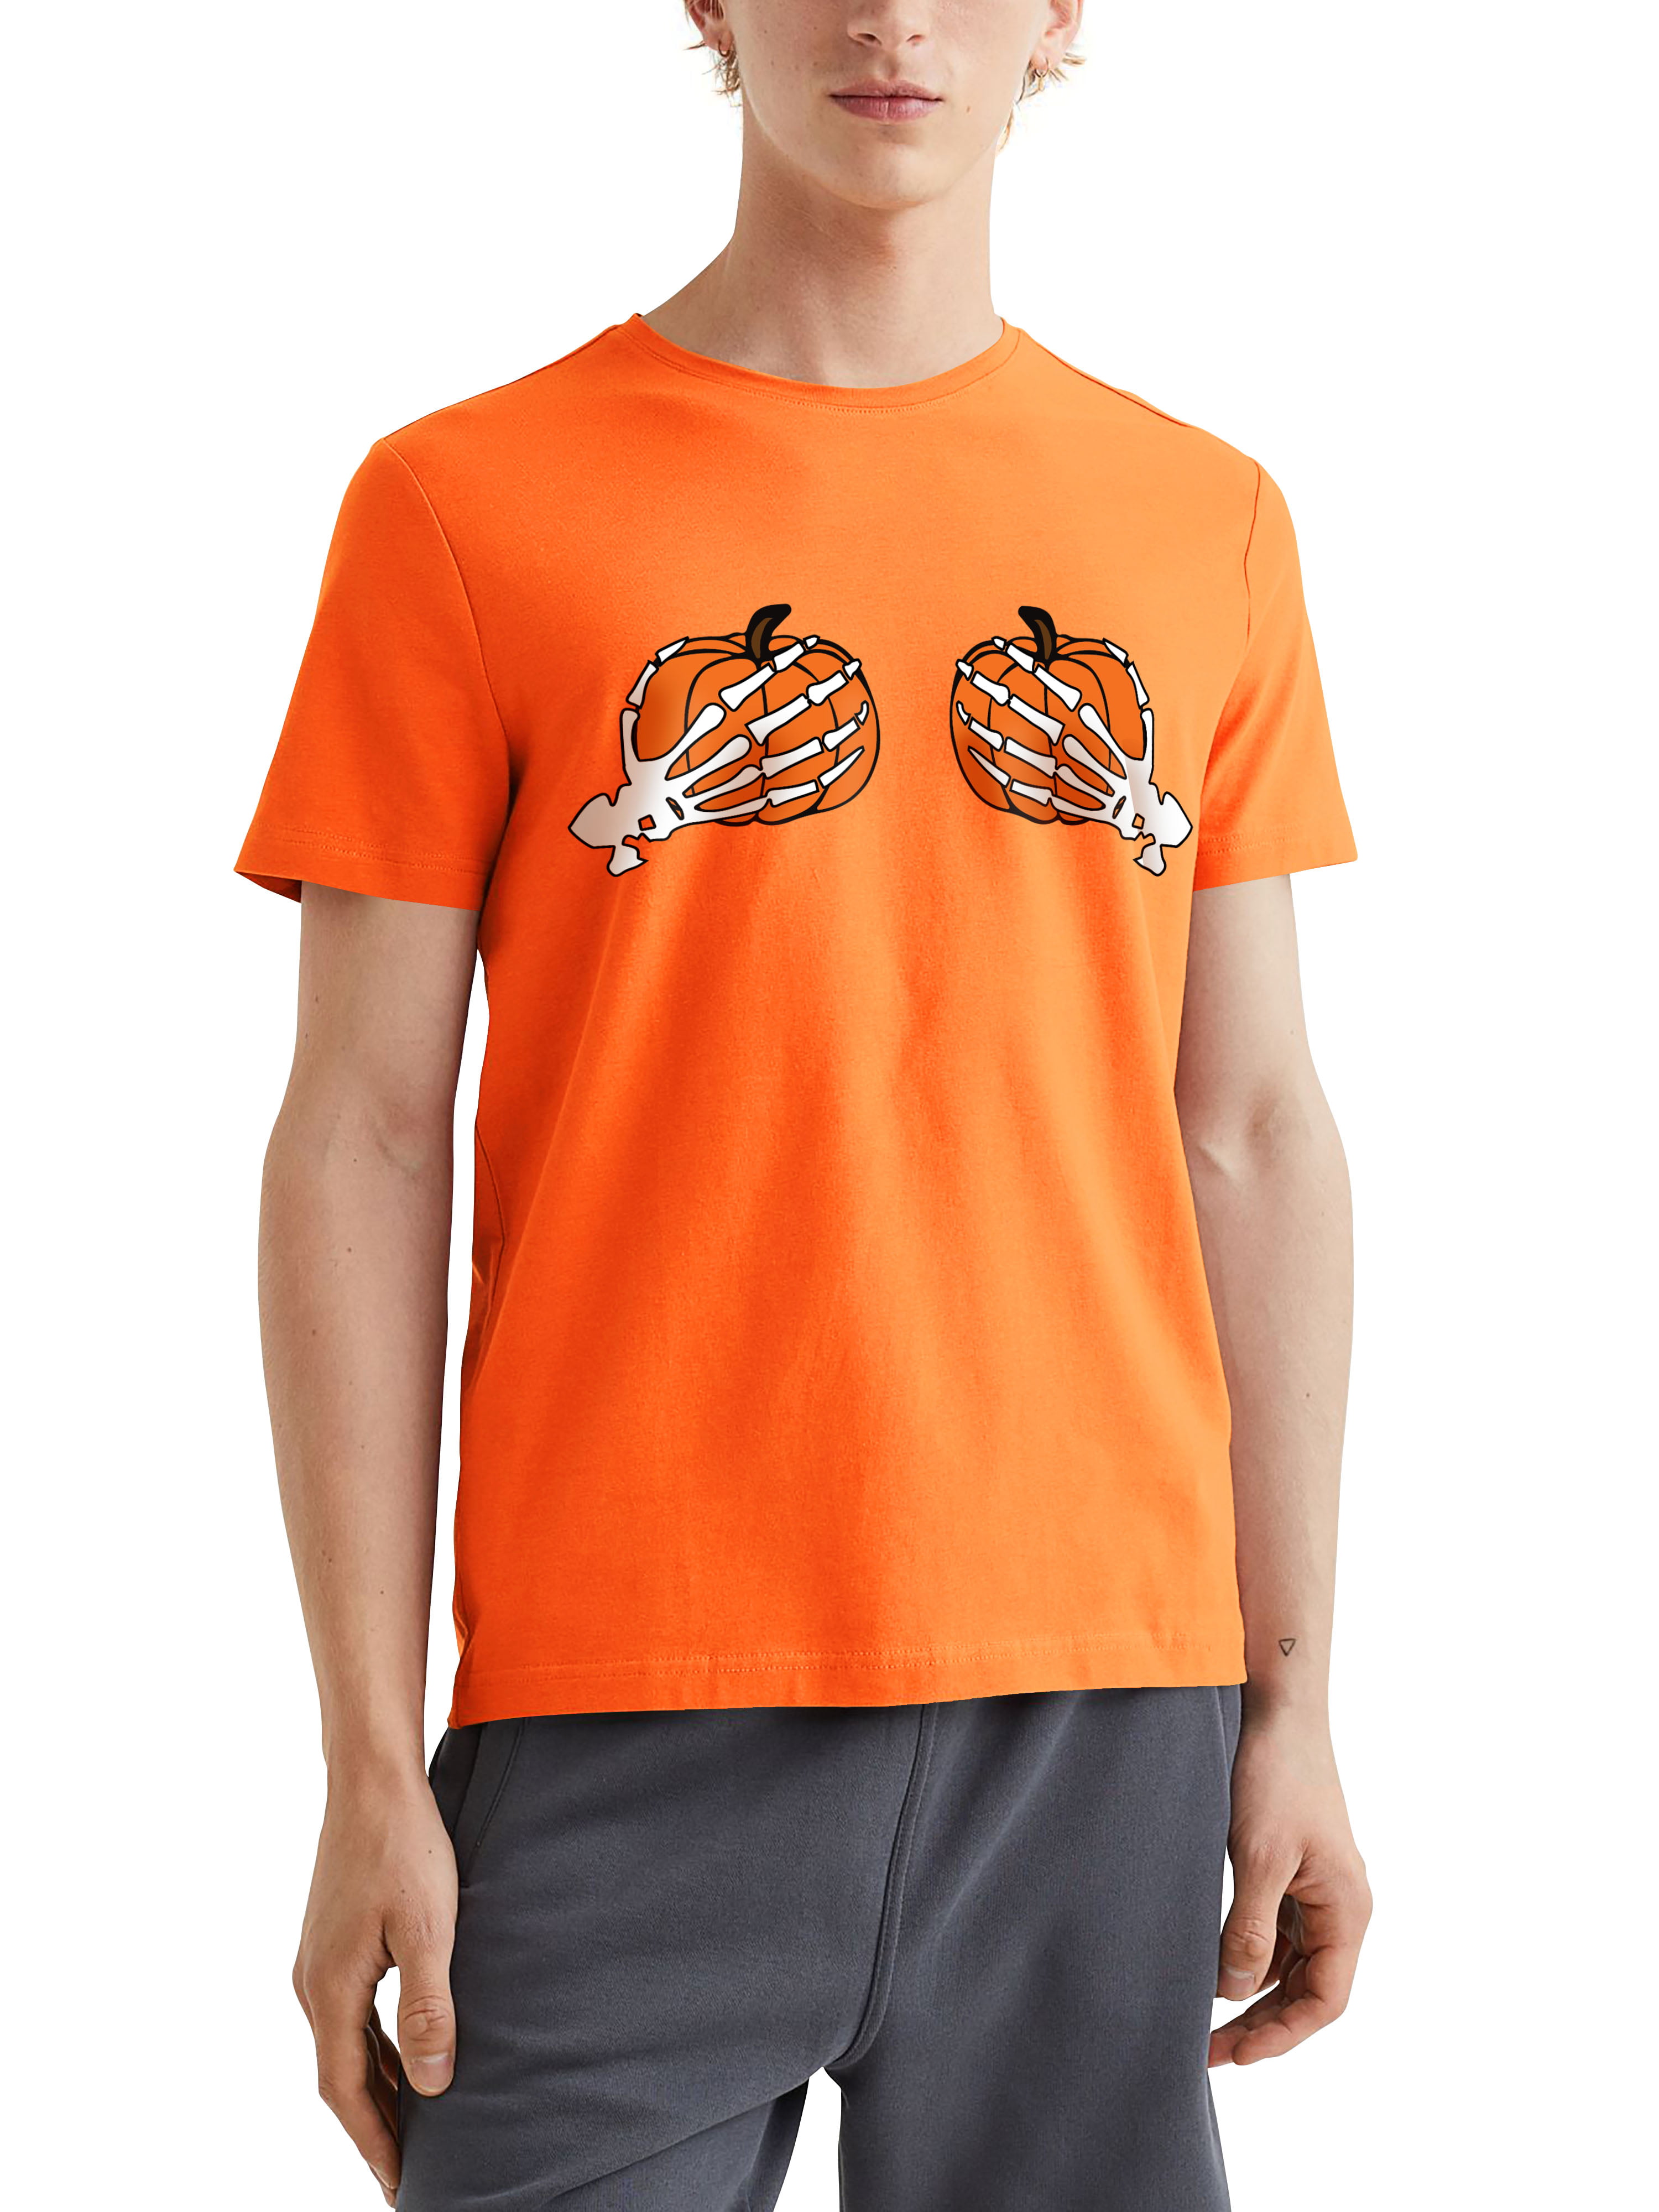 Louis Vuitton Men's Pumpkin Printed Tshirt